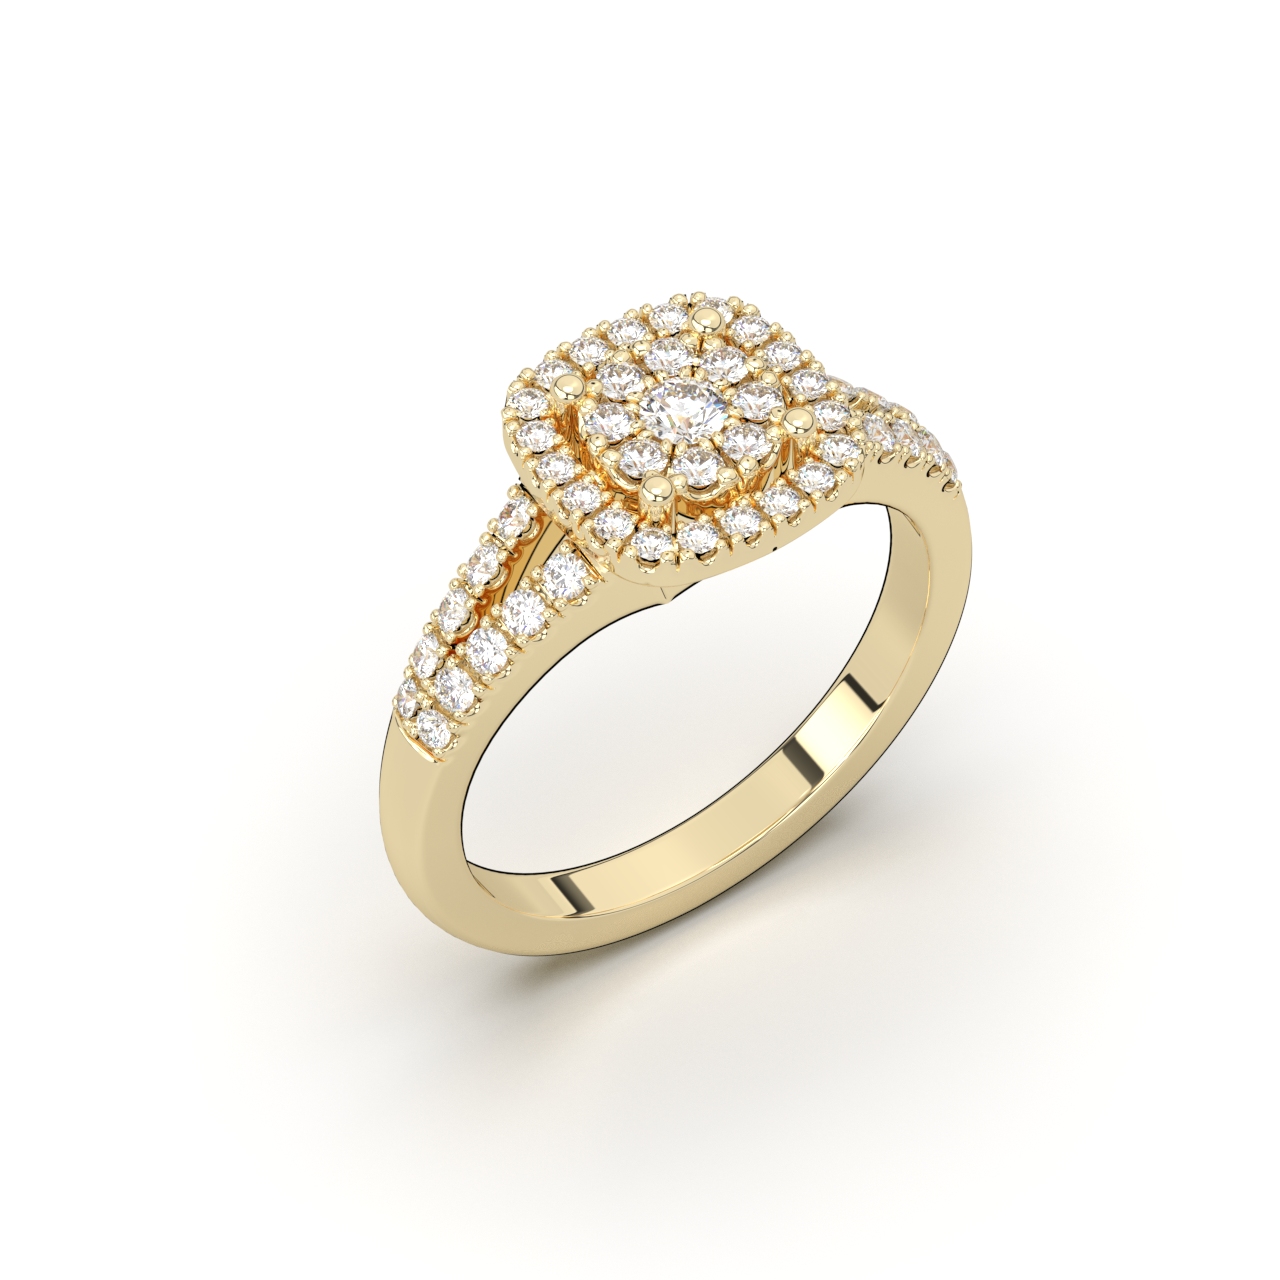 Dijamantski prsten Xsp0246